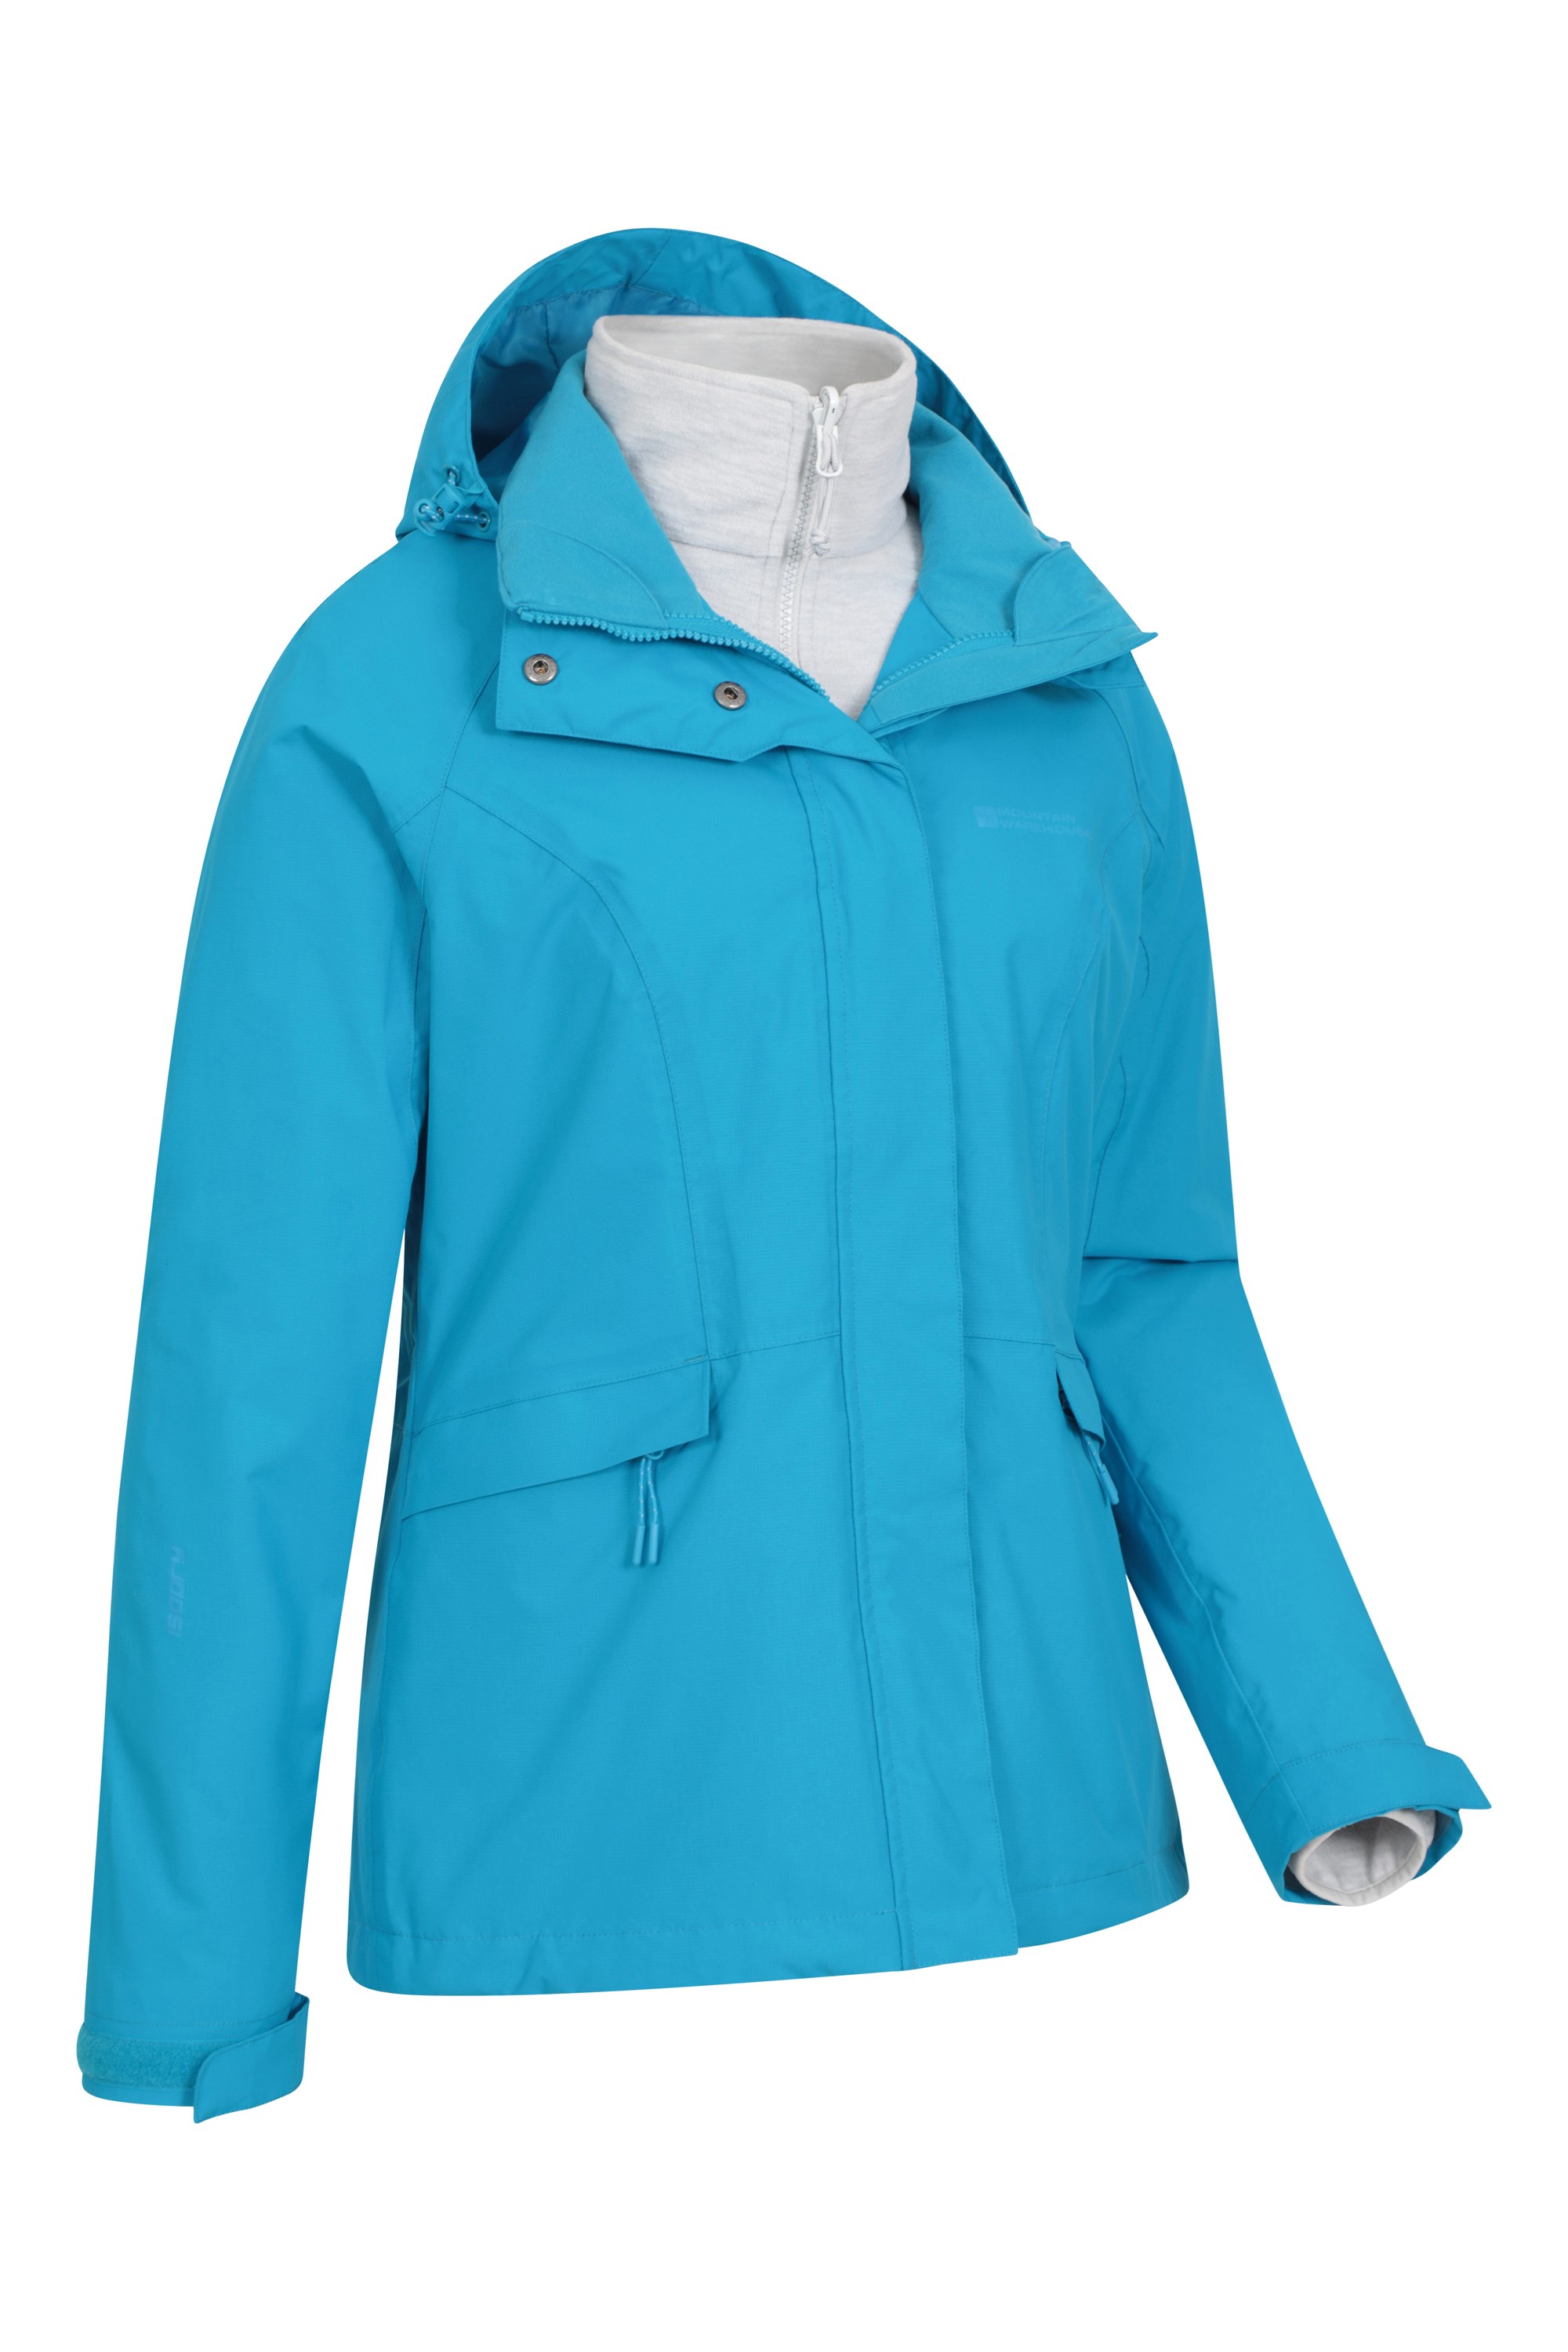 Womens 3 in 1 Waterproof Jacket Outdoor Mountain Windproof Rain Jackets Detachable Inner warm Fleece rainwear Breathable Windbreake,Light blue-3XL 